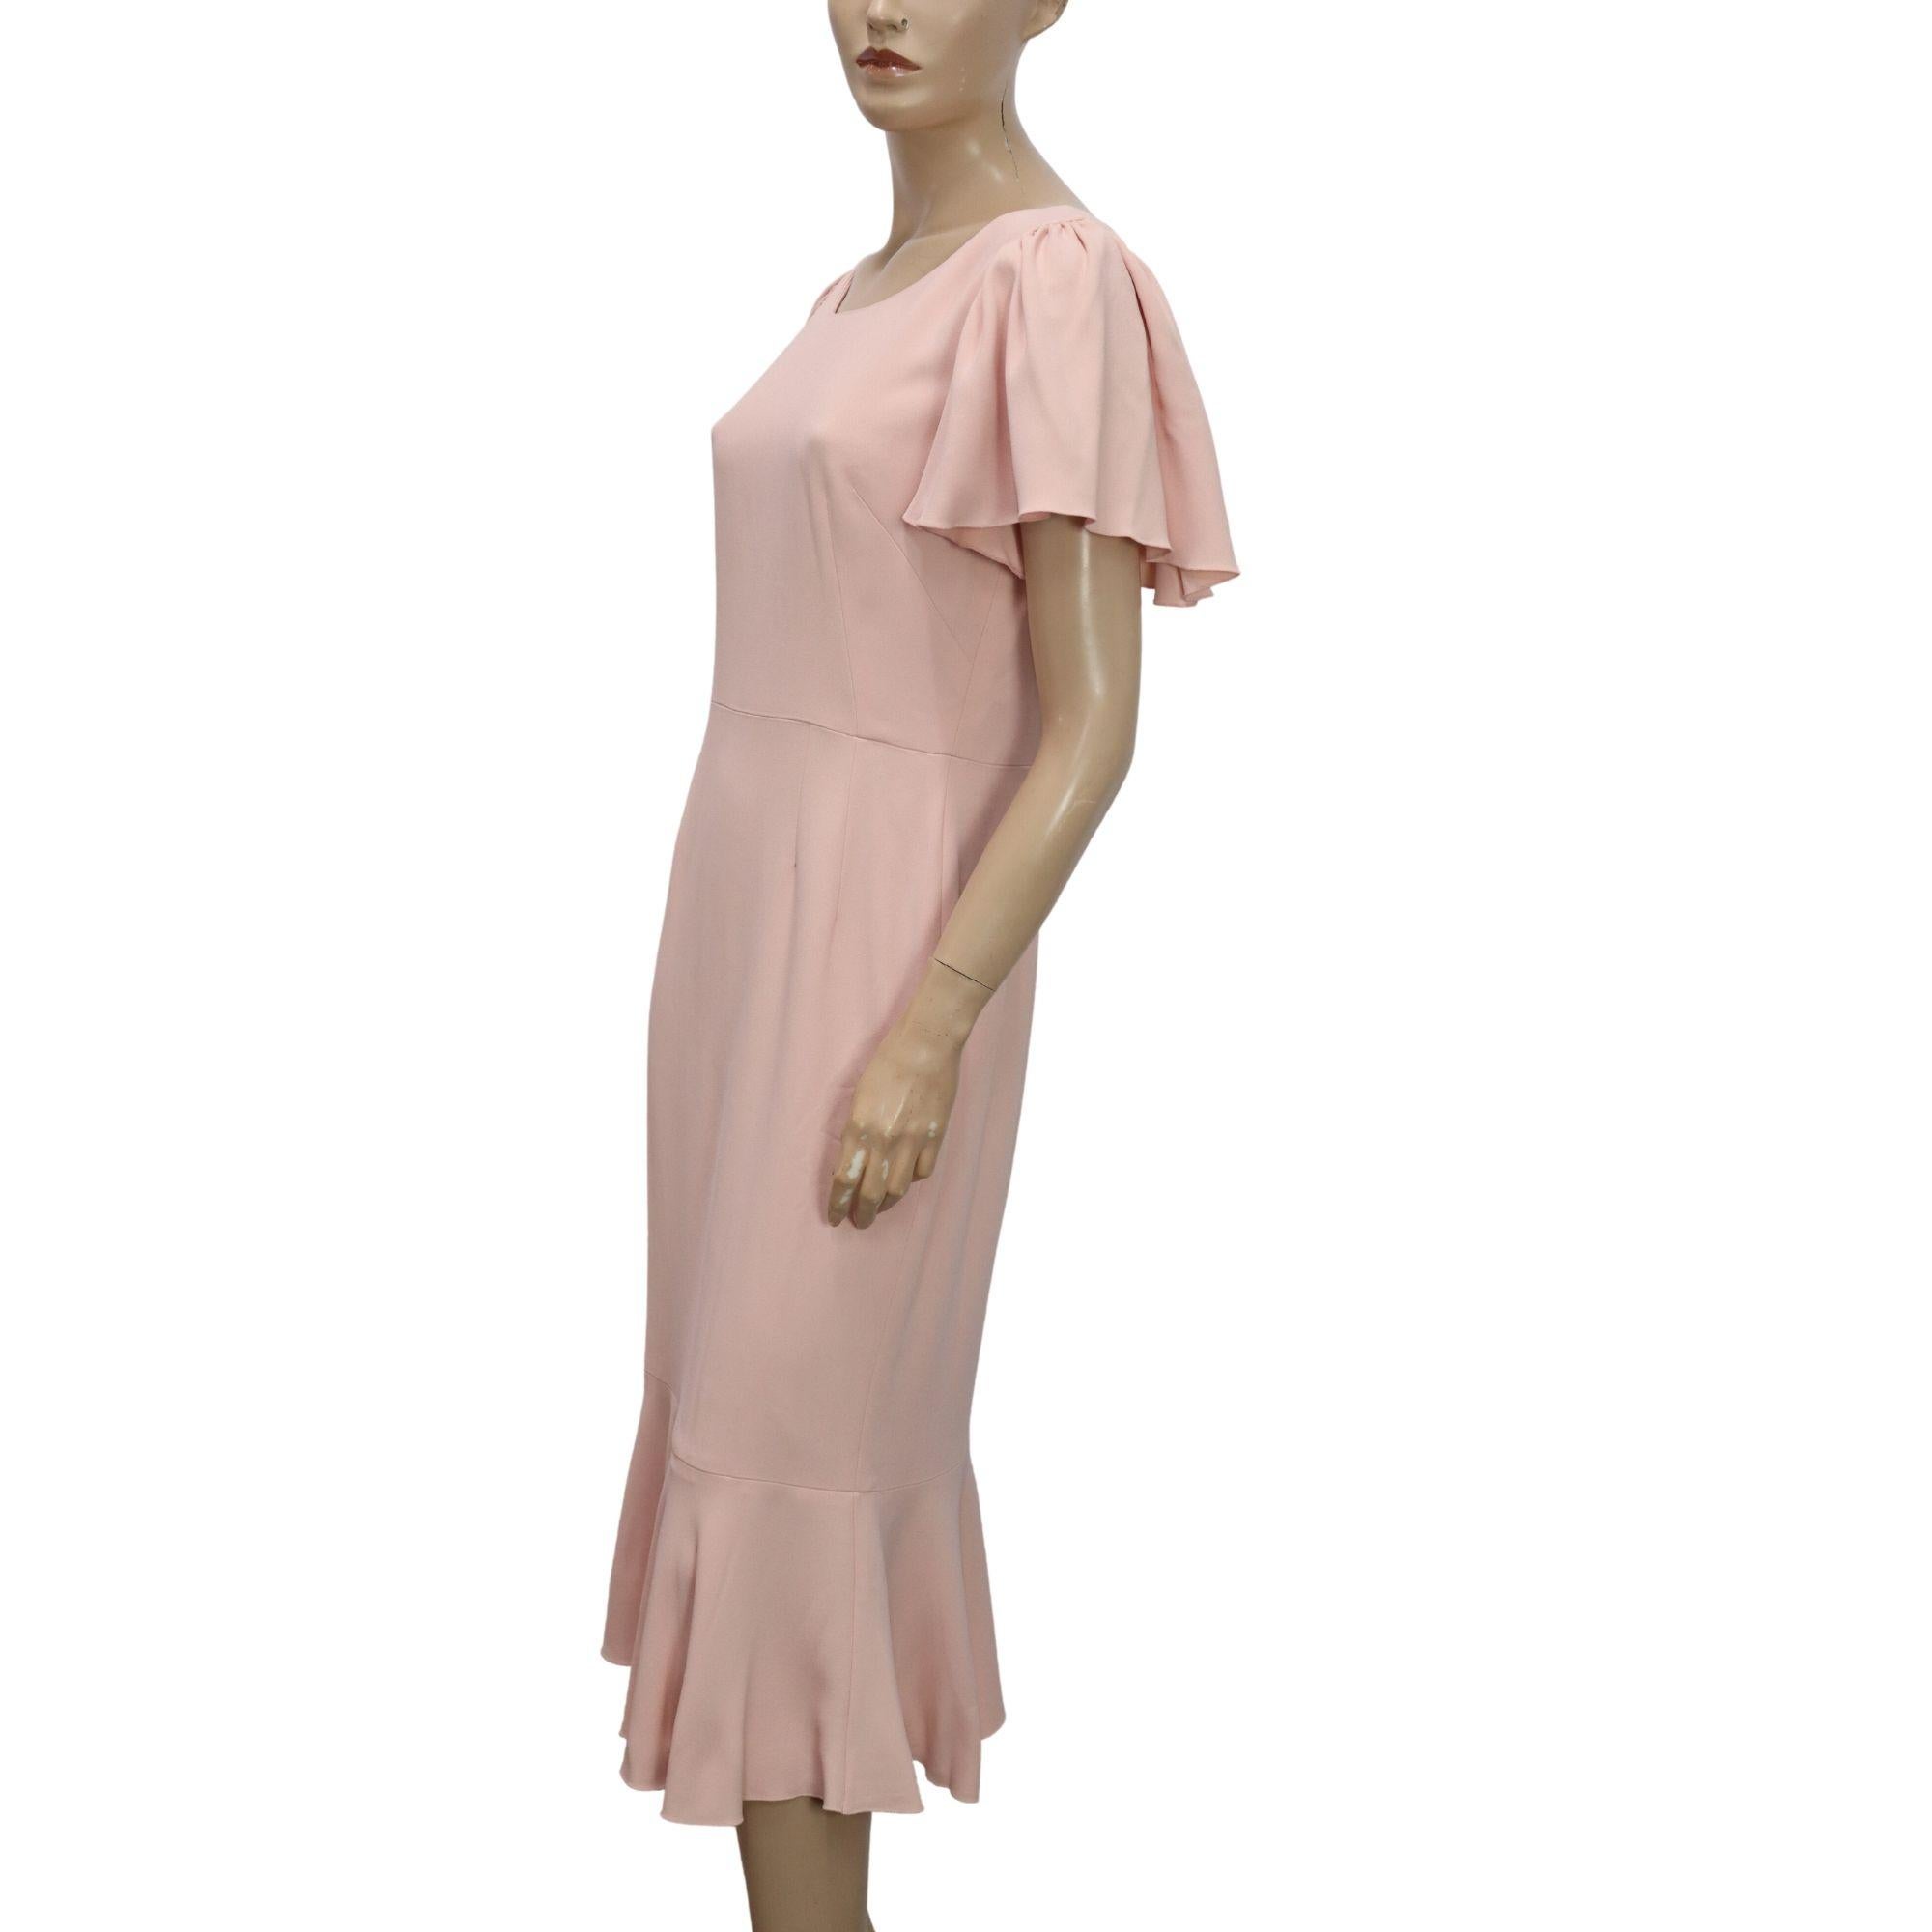 Dolce & Gabbana hellrosa Kleid mit gerafftem Saum und Flatterärmeln.

Zusätzliche Informationen:
MATERIAL: Viskose und Acetat 
Größe: IT 44 / EU 40
Allgemeiner Zustand: Ausgezeichnet